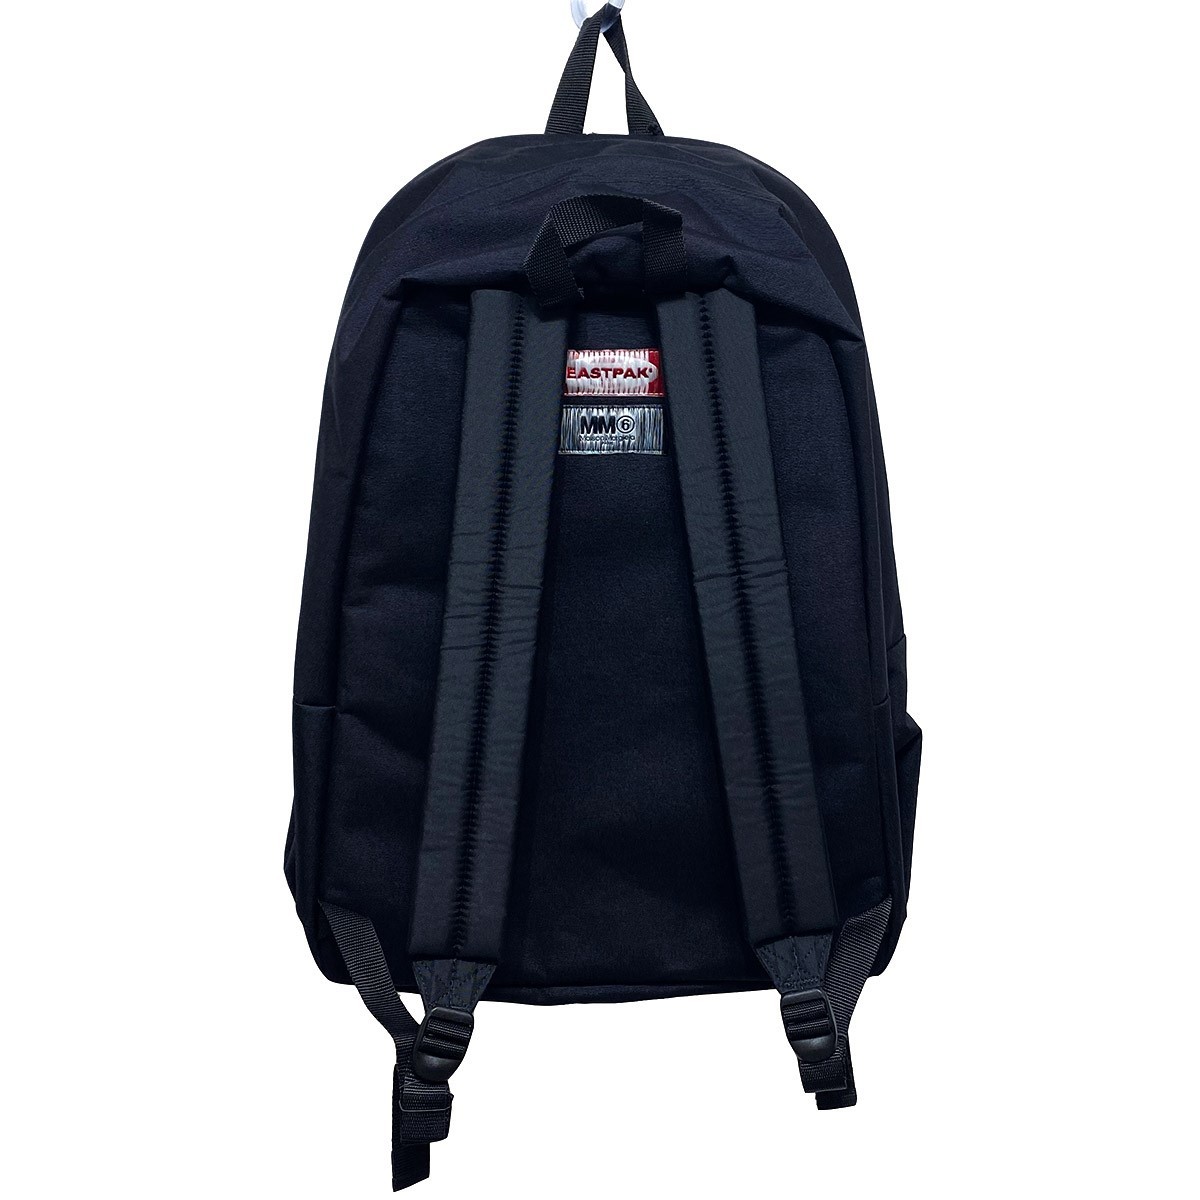 MM6×EASTPAK Padded-Back-to-Back XL backpackバックパック 8071000074980